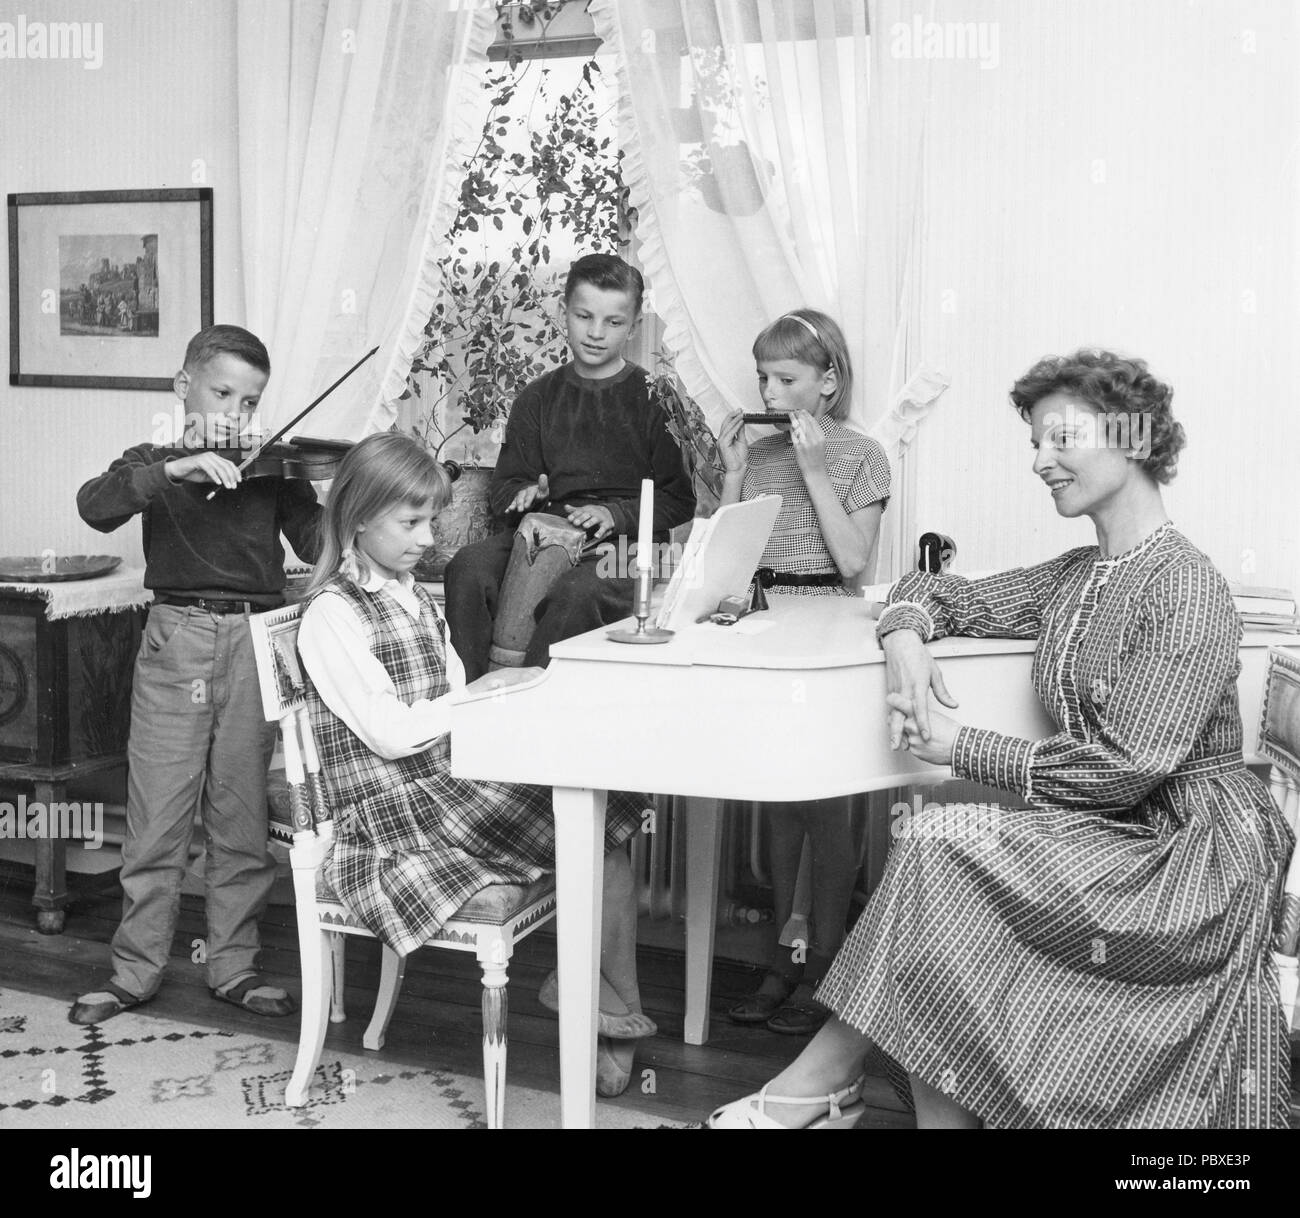 Ingmar Bergman. 1918-2007. Schwedische Filmregisseur. Bilder zu Hause 1958 seine zweite Frau Ellen Bergman mit wem er verheiratet war mit zwischen 1947-1952. Sie hatten vier Kinder, Matten, Eva, Jan und Anna. Stockfoto